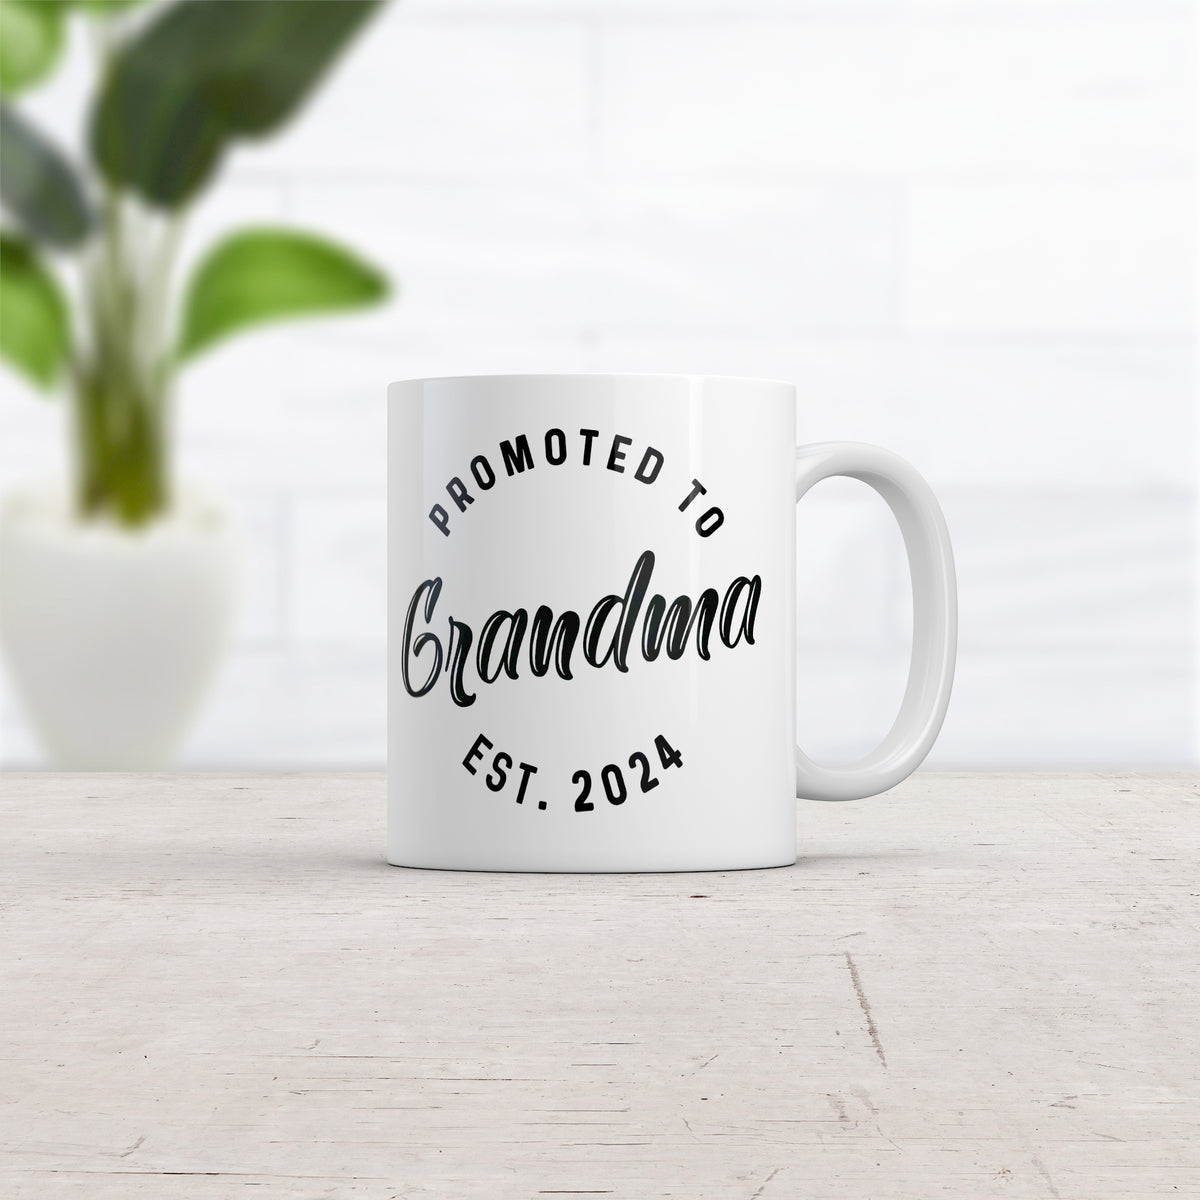 Promoted To Grandma 20XX Mug